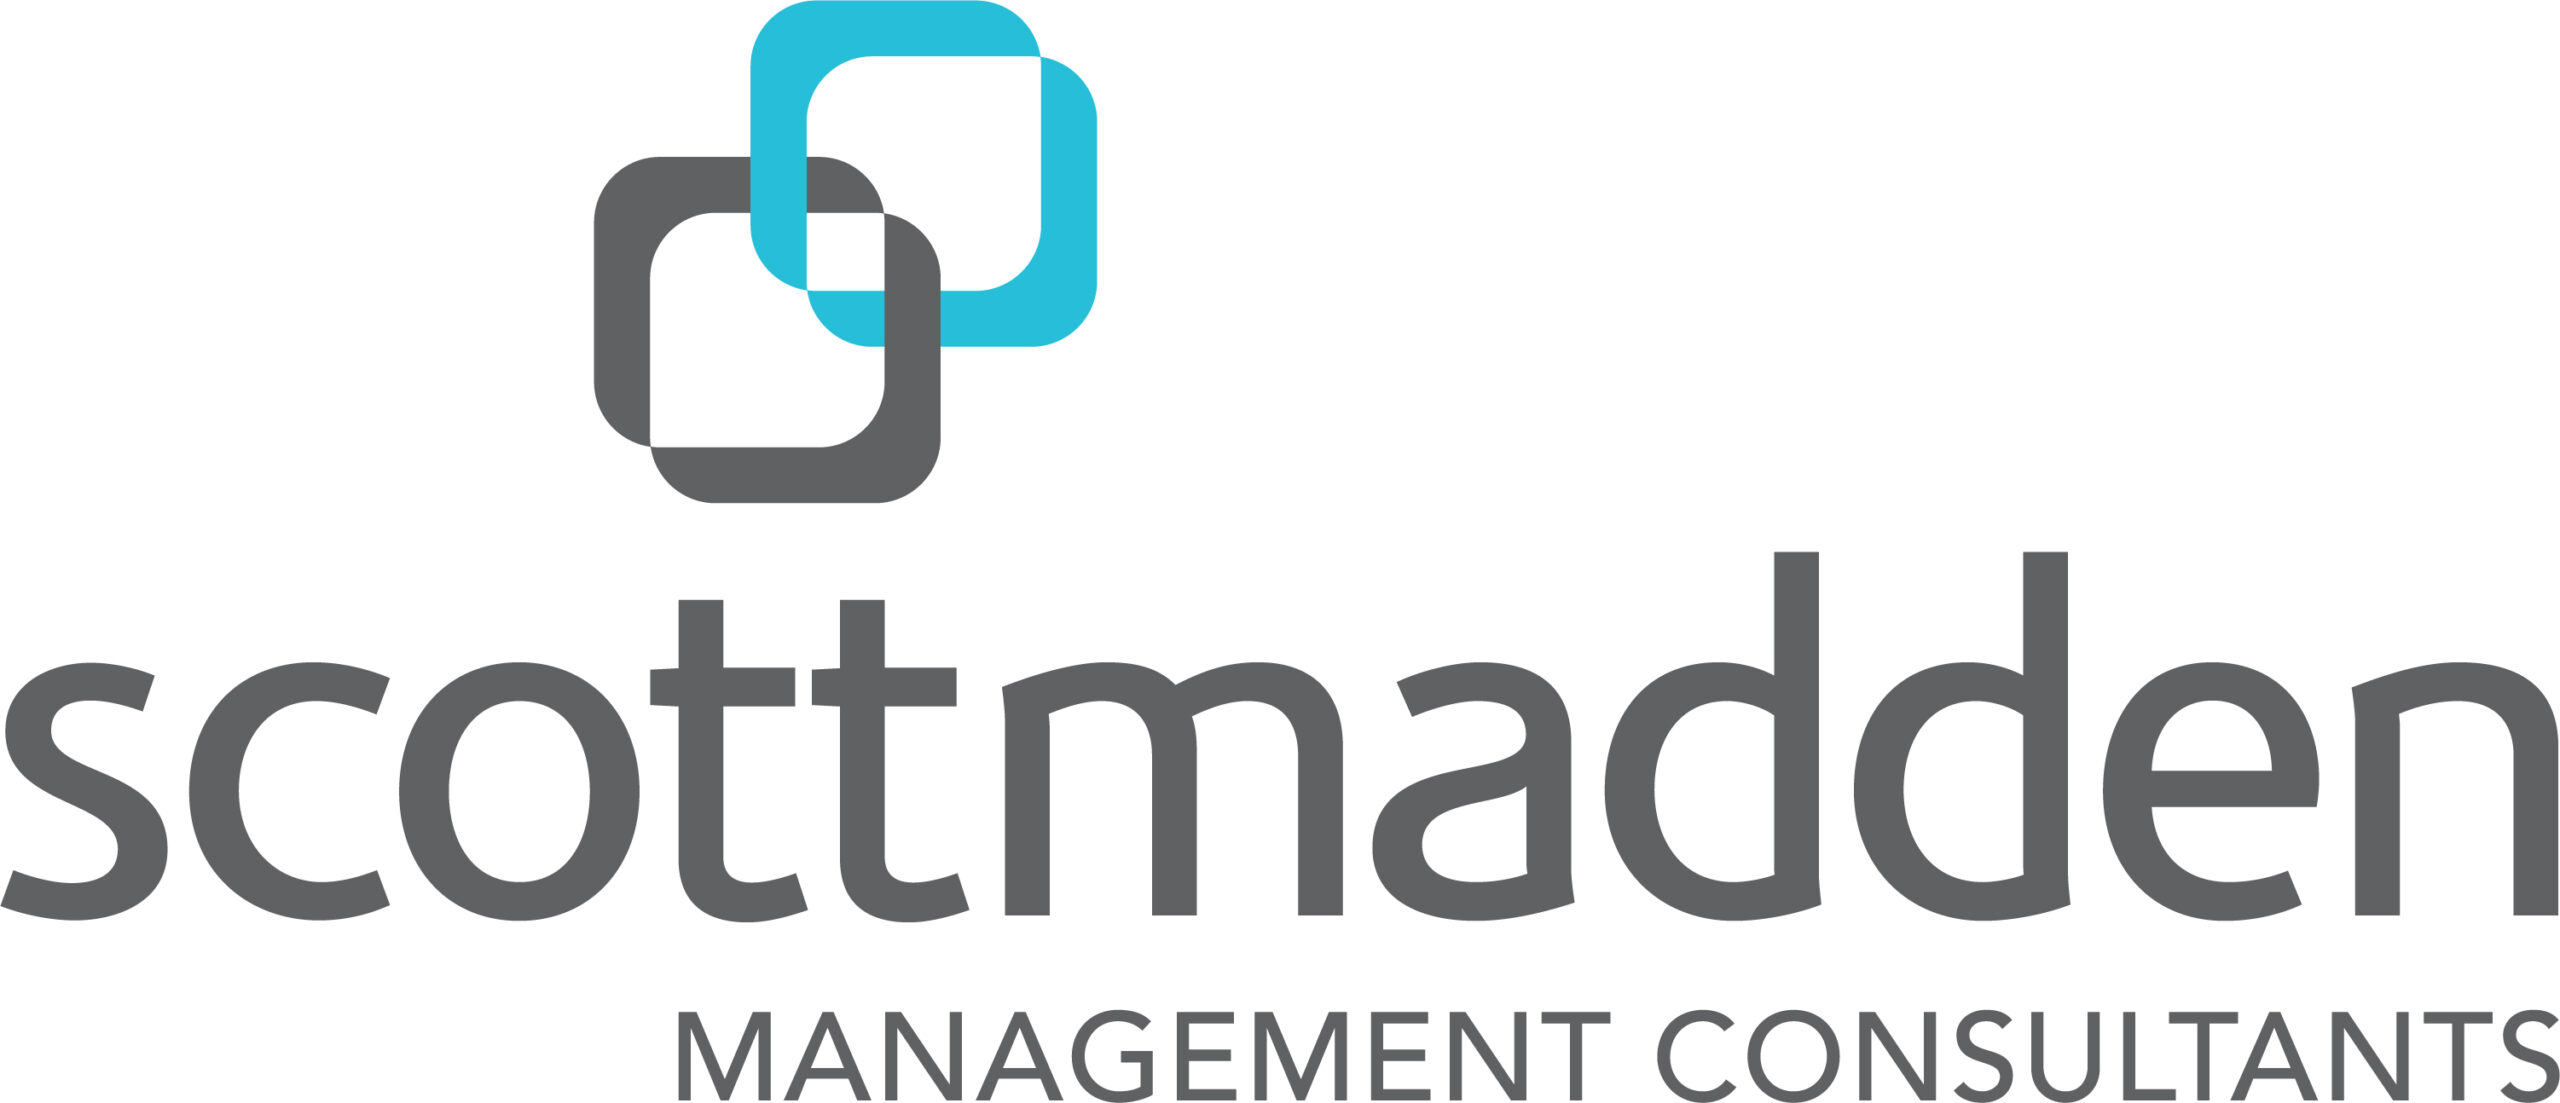 ScottMadden-Logo-Full-Color-RGB